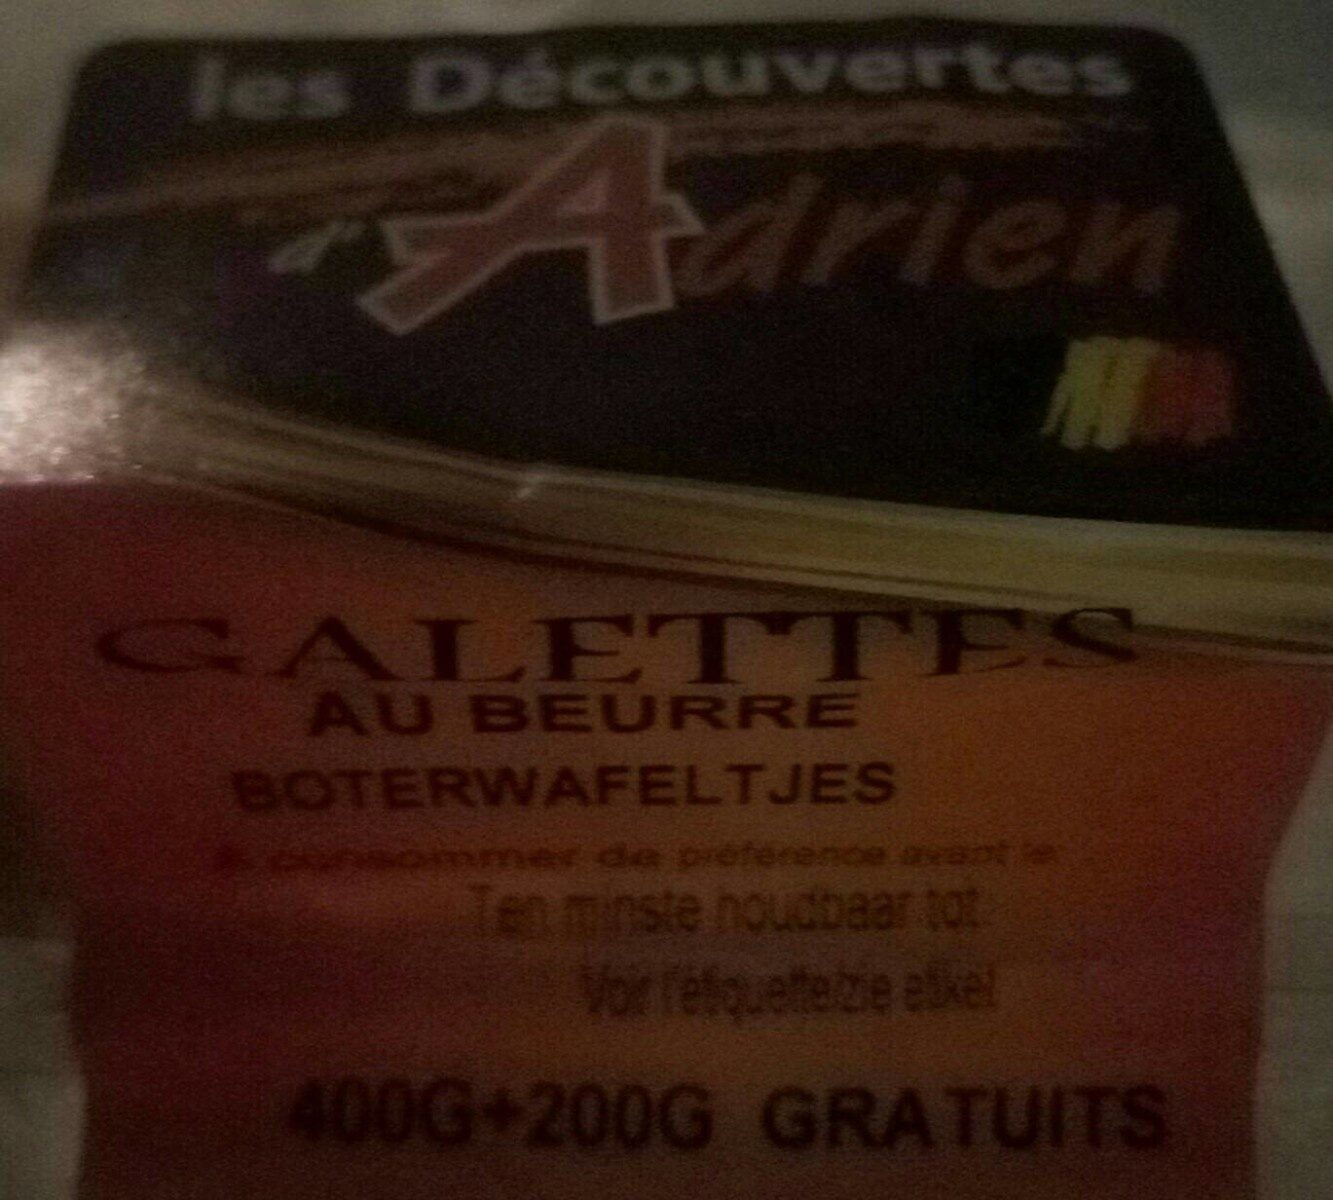 Galettes au beurre - Product - fr